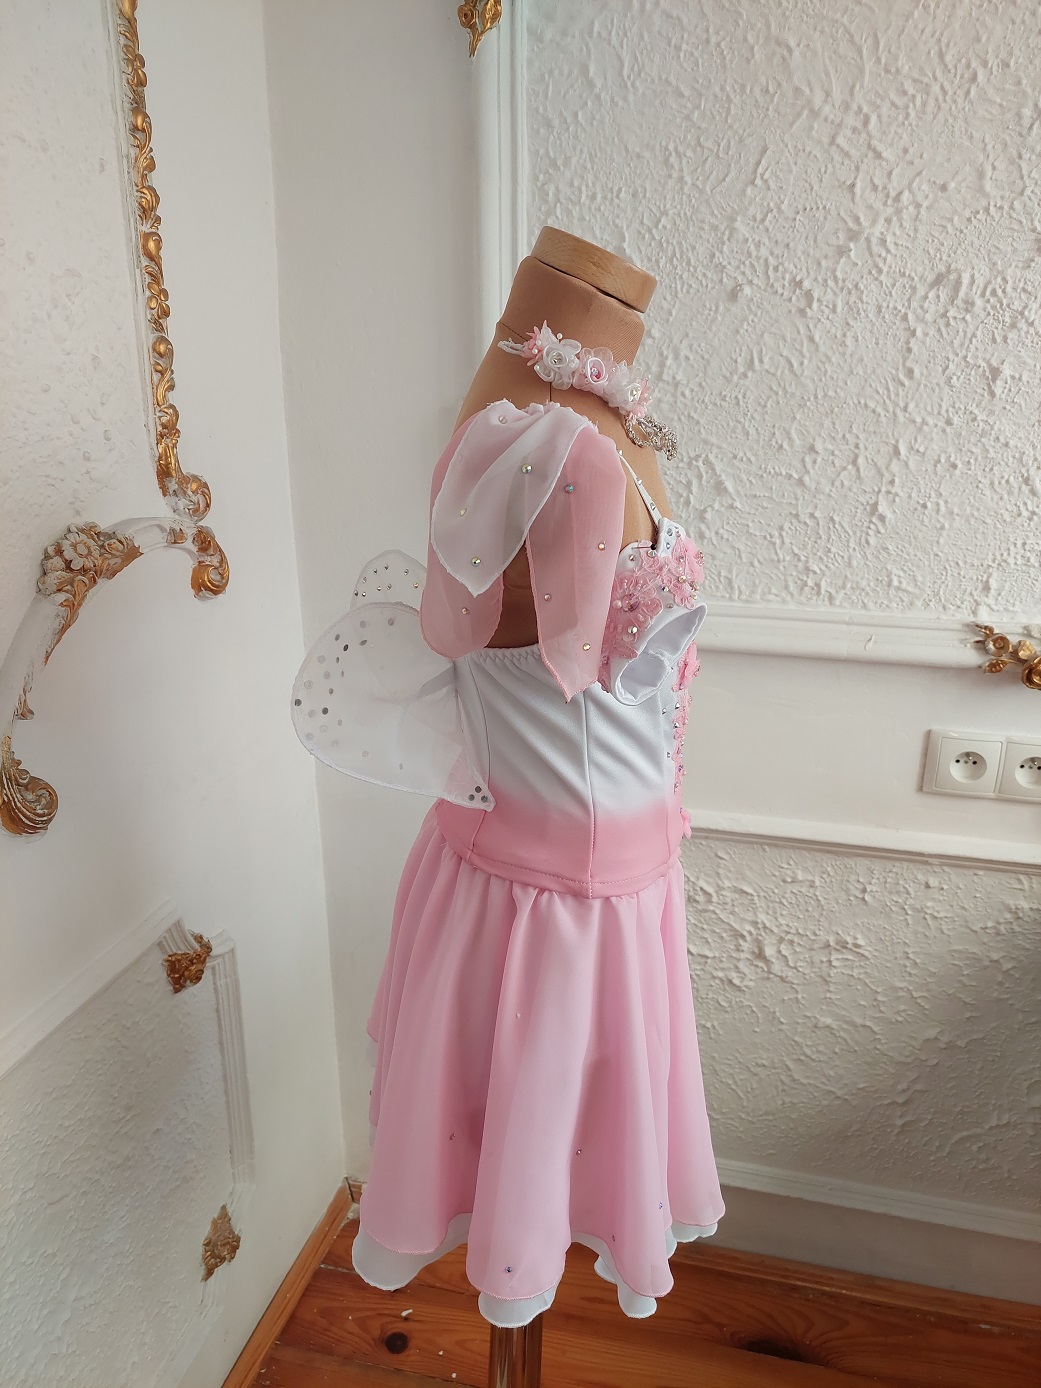 cupid variation costume